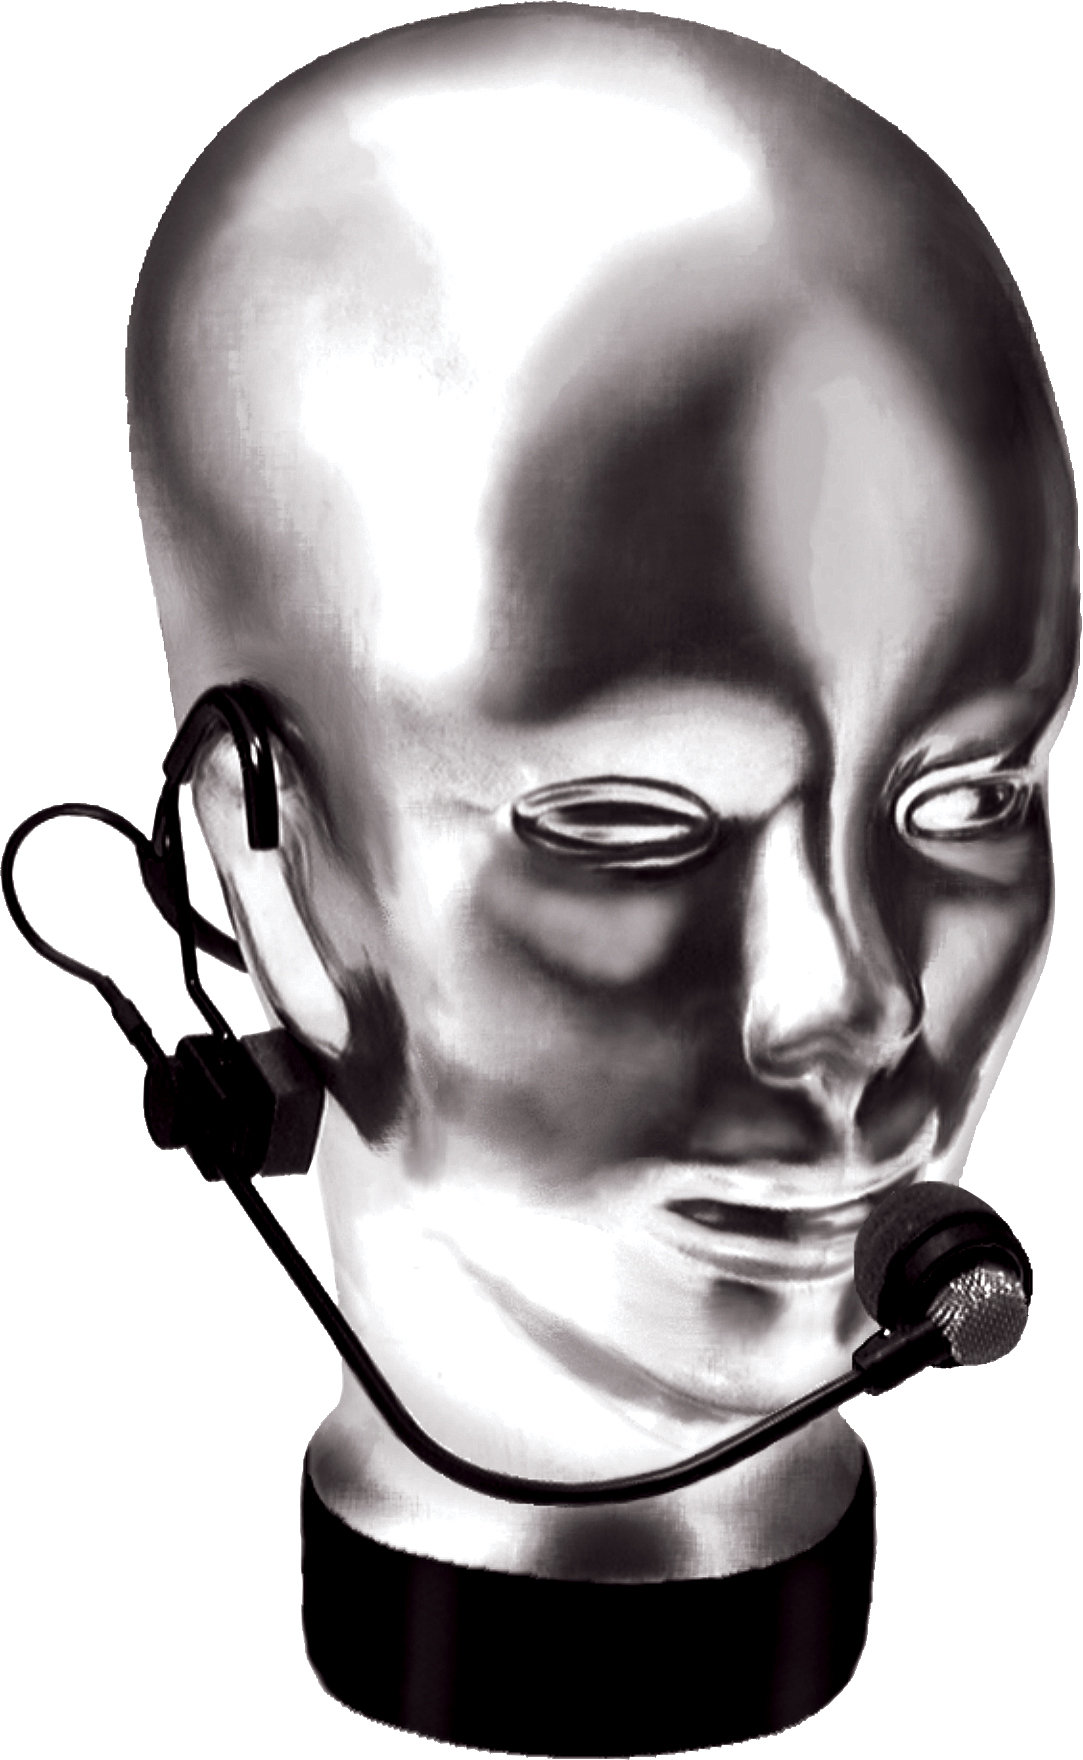 Crown CM-311A - Cardioid Condenser Headworn Vocal Microphone